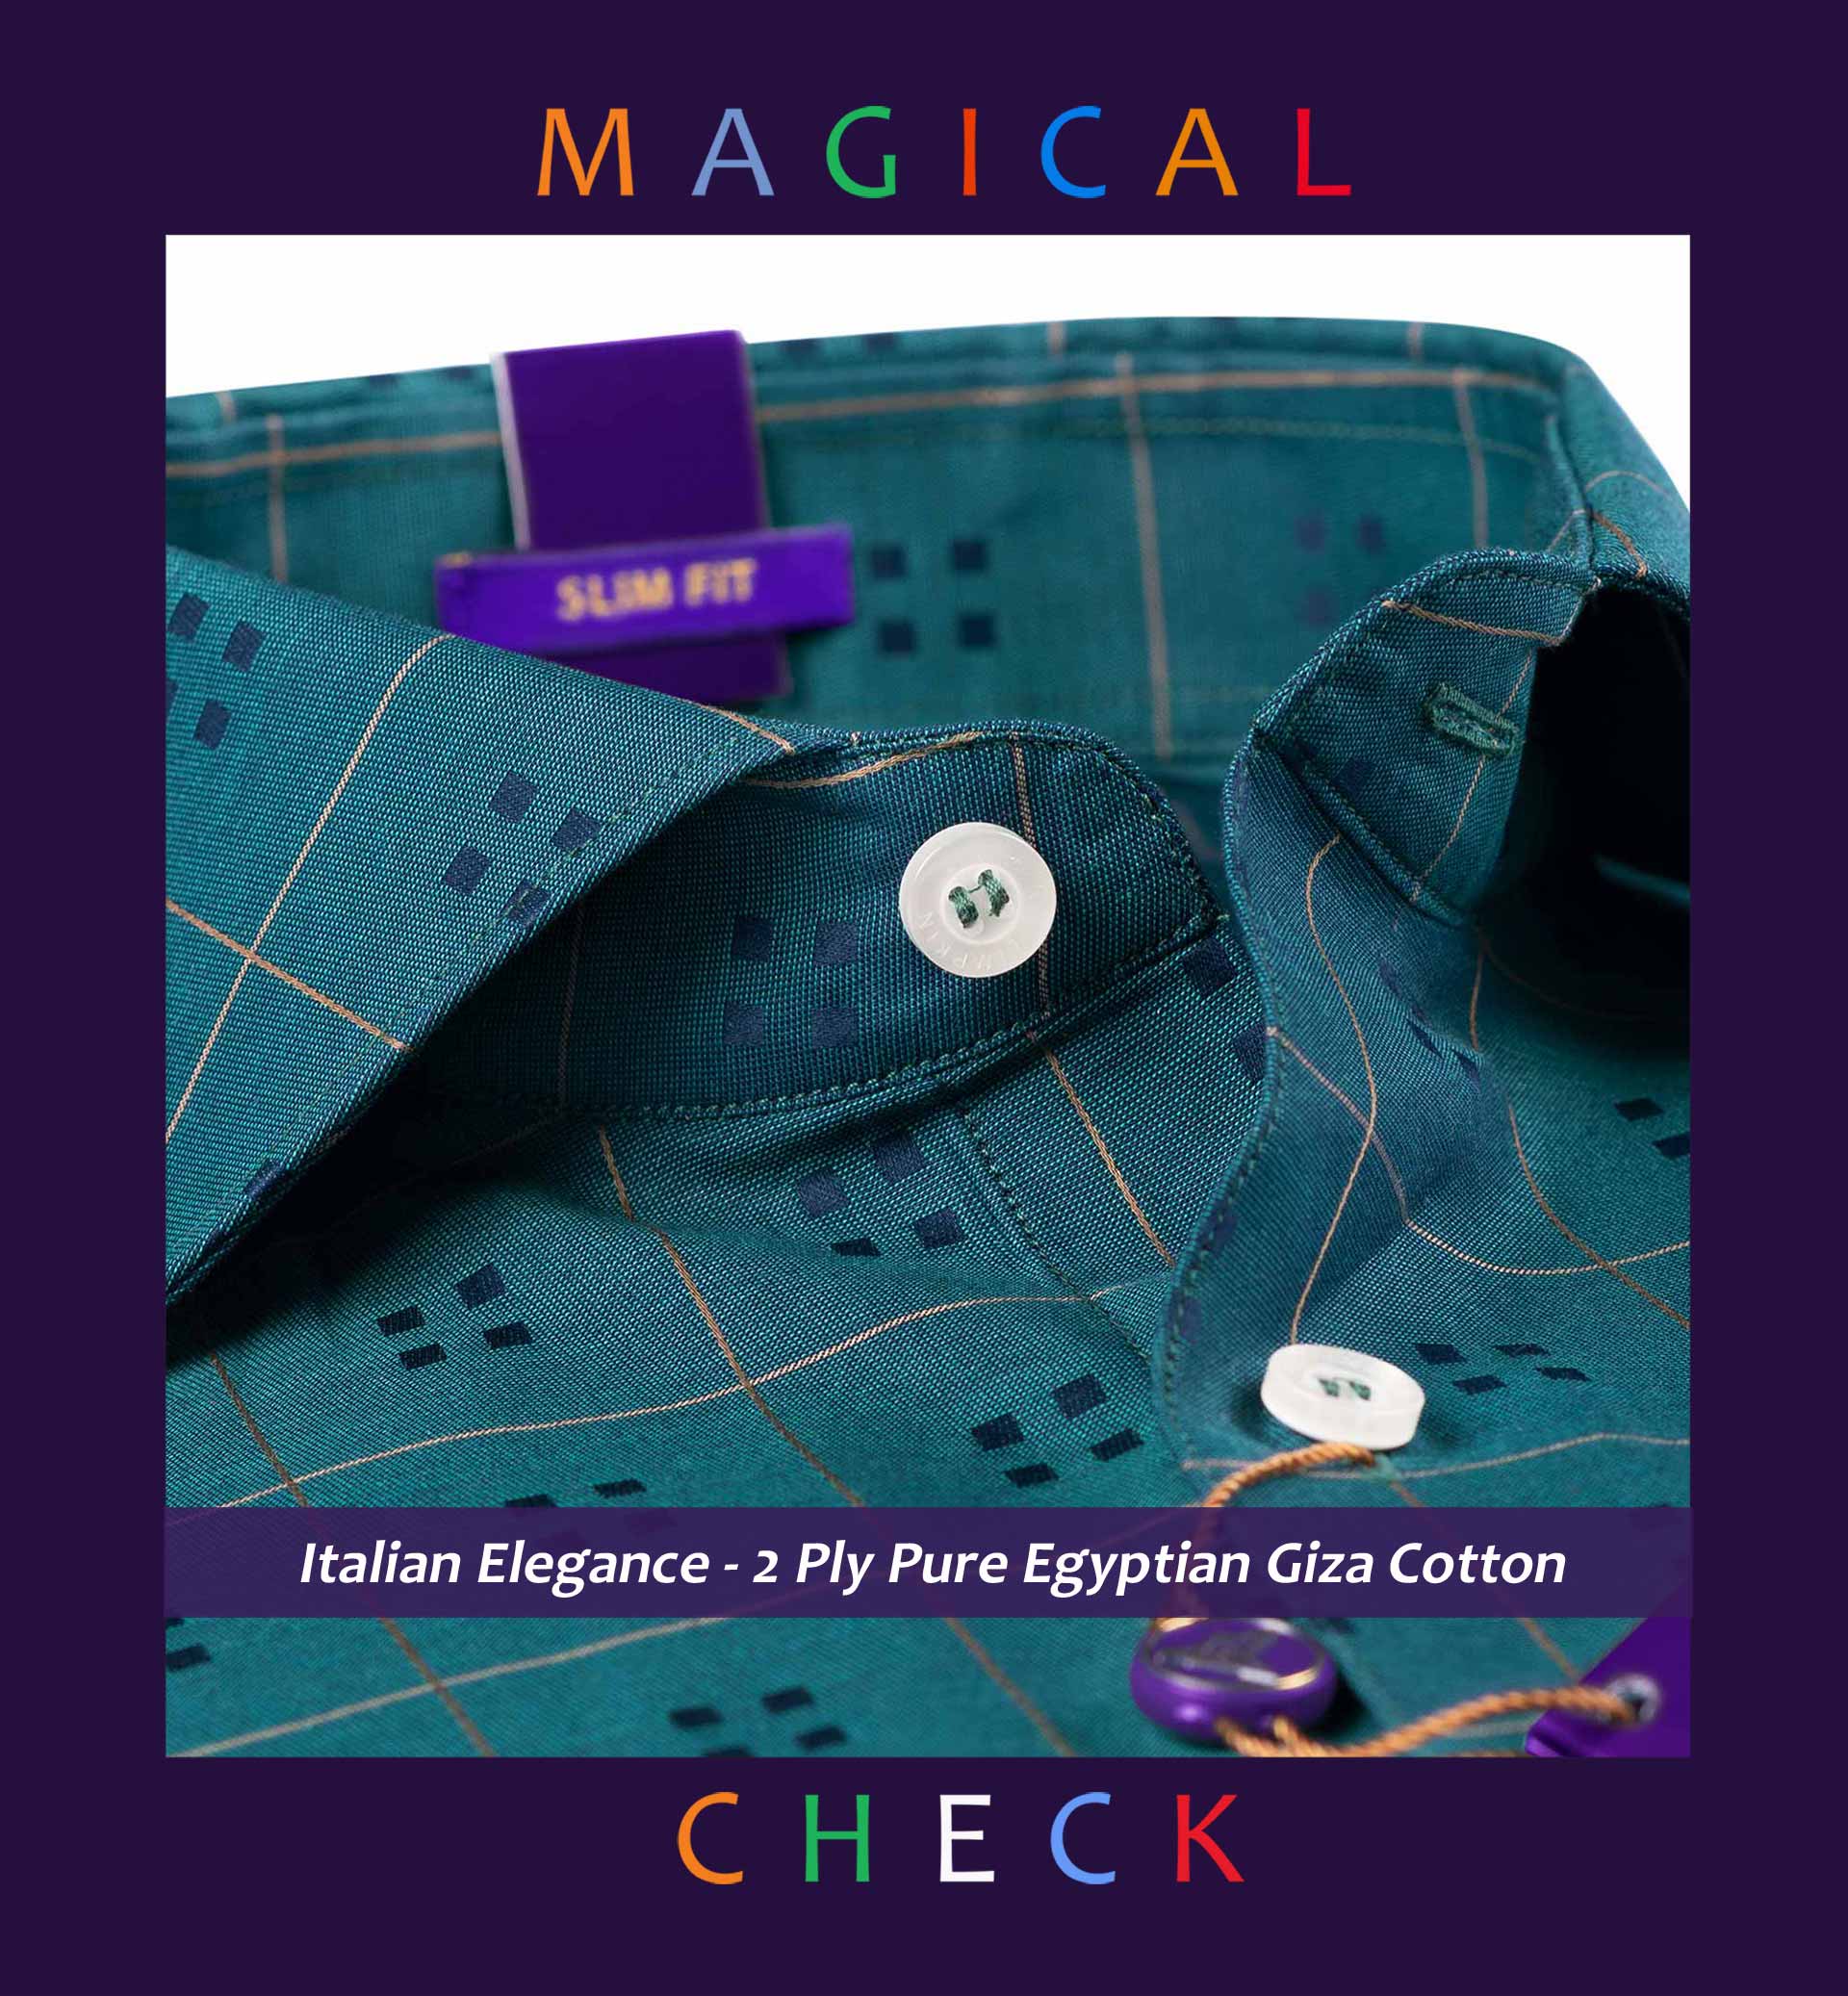 Marais- Teal Green & Beige Magical Check